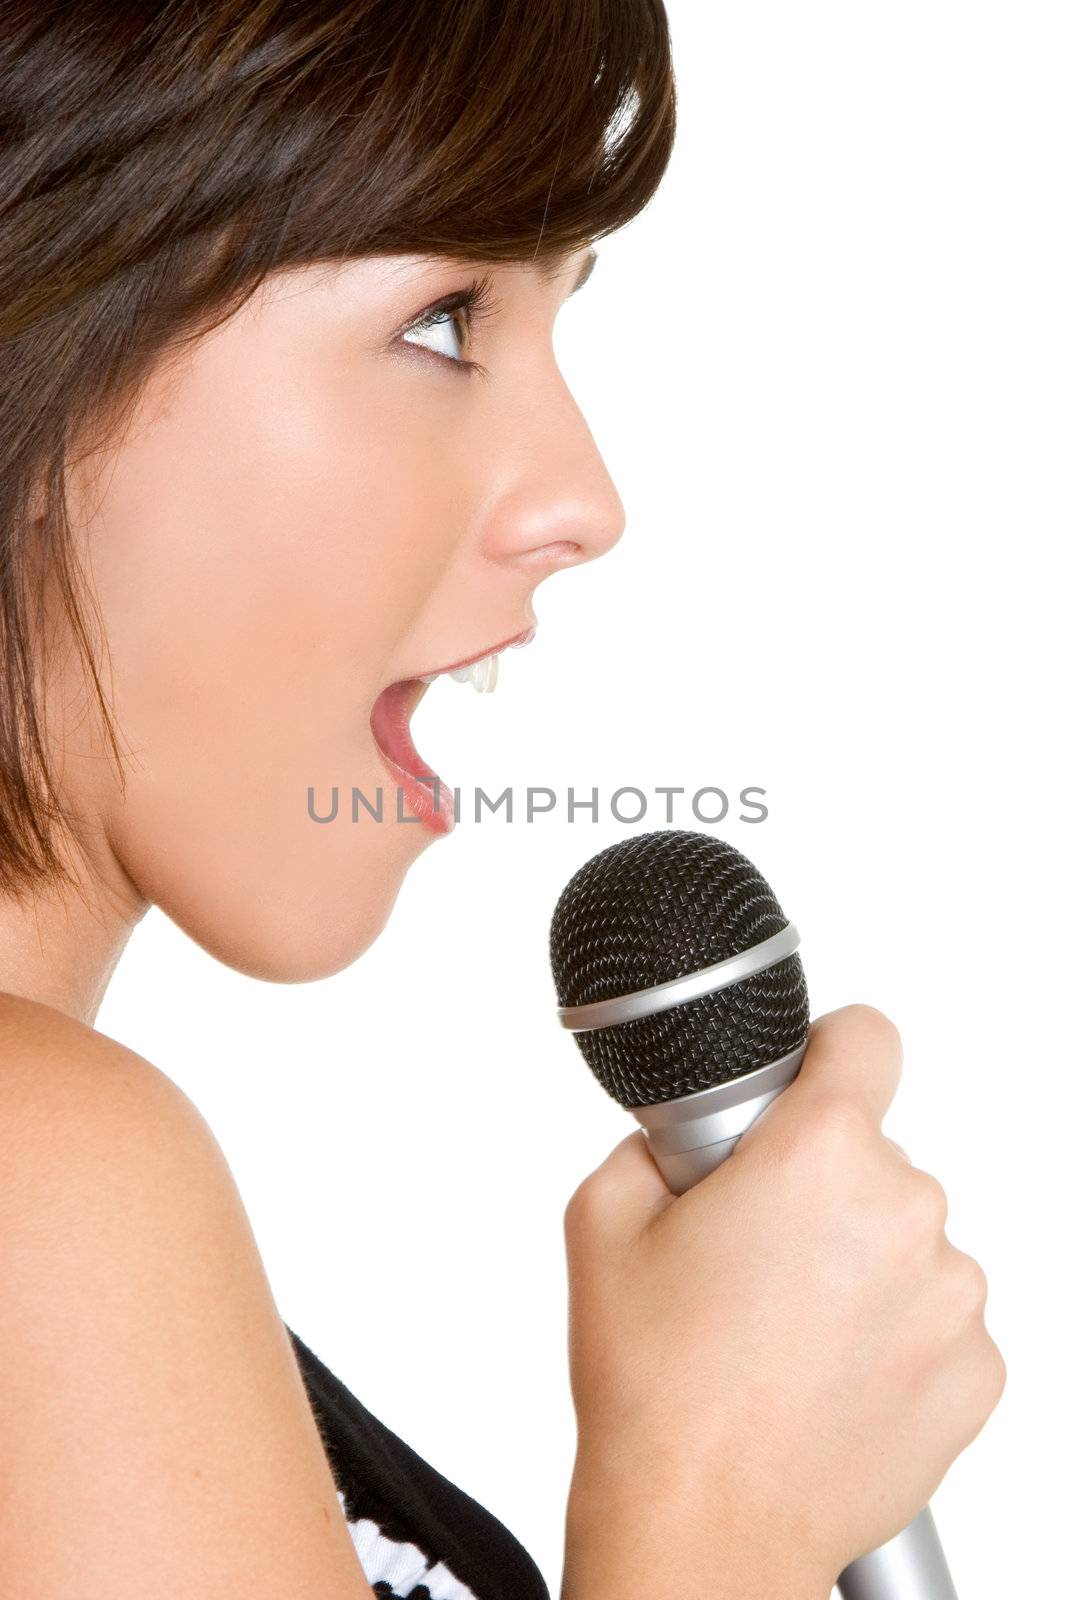 Singing Girl by keeweeboy